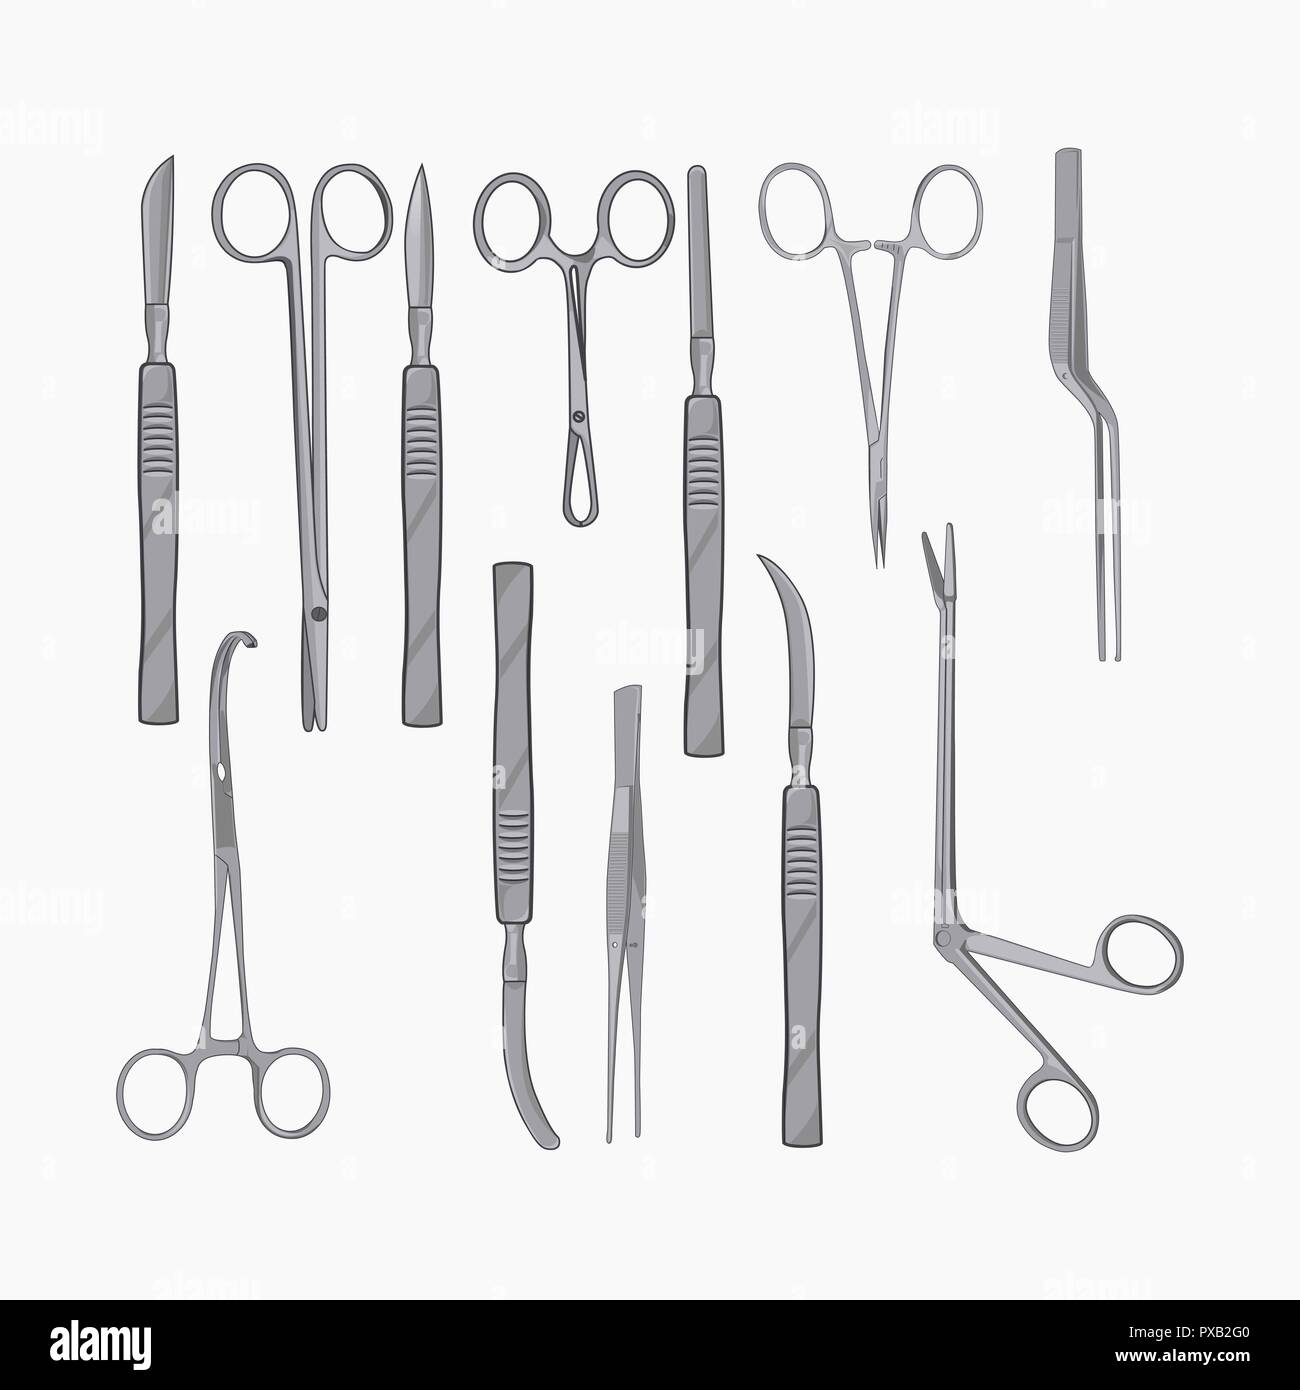 Chirurgische Instrumente isoliert auf weißem Hintergrund. Medizinische  Werkzeuge Sammlung Stock-Vektorgrafik - Alamy